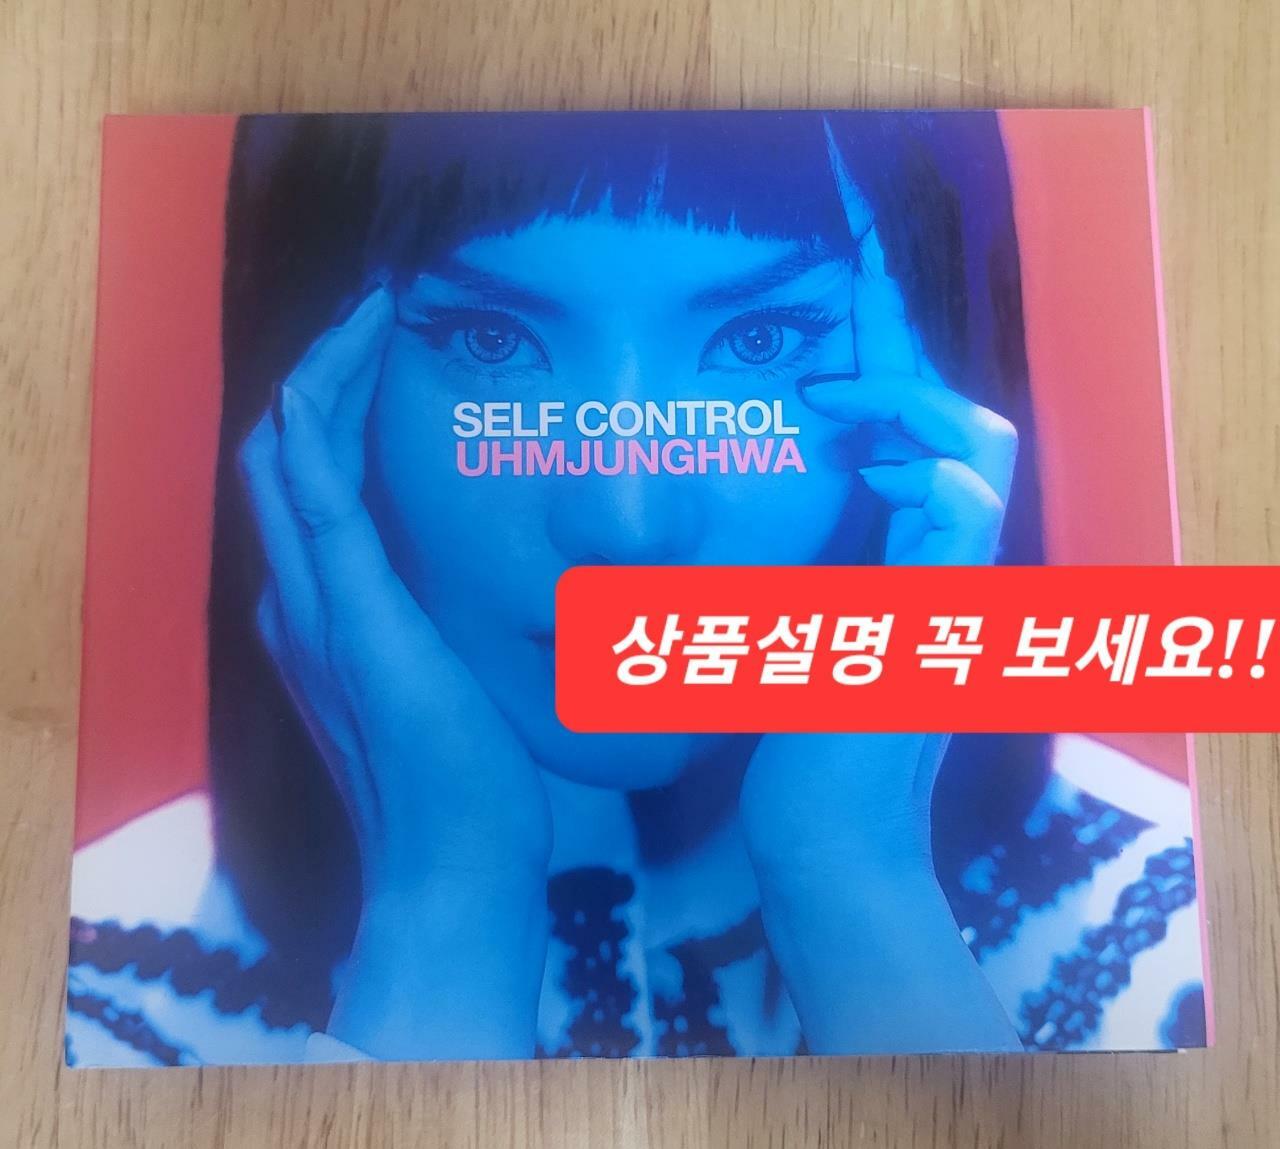 [중고] 엄정화 8집 - Self Control